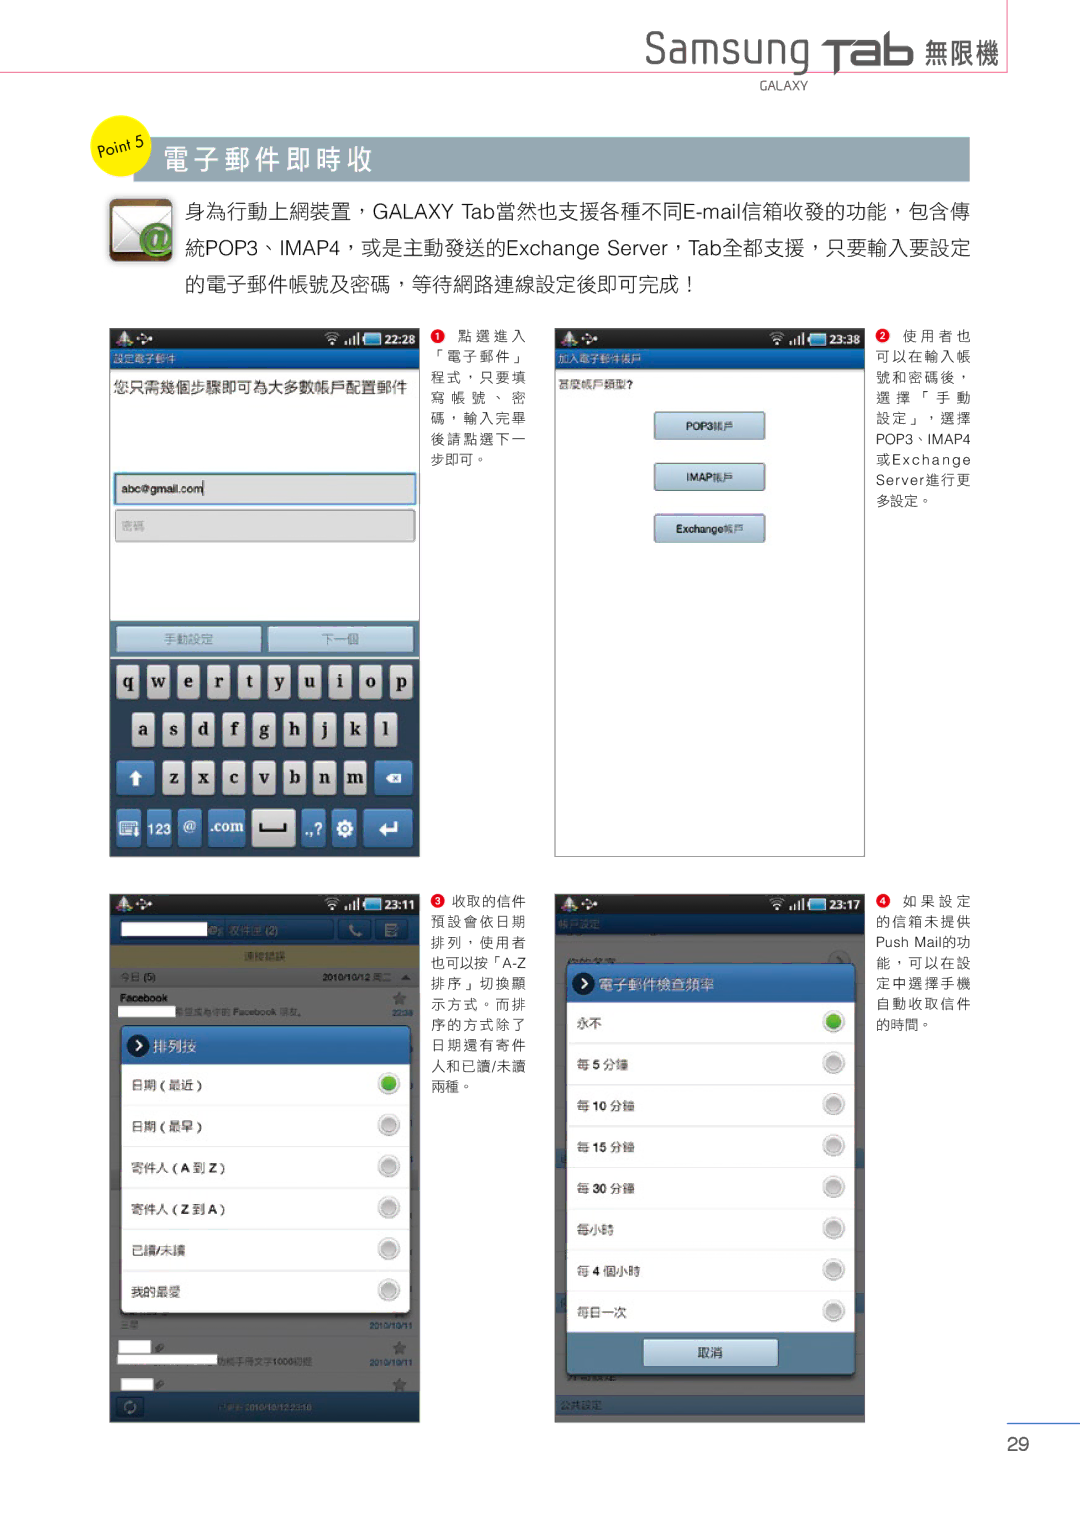 Samsung Tablet manual 電子郵件即時收 